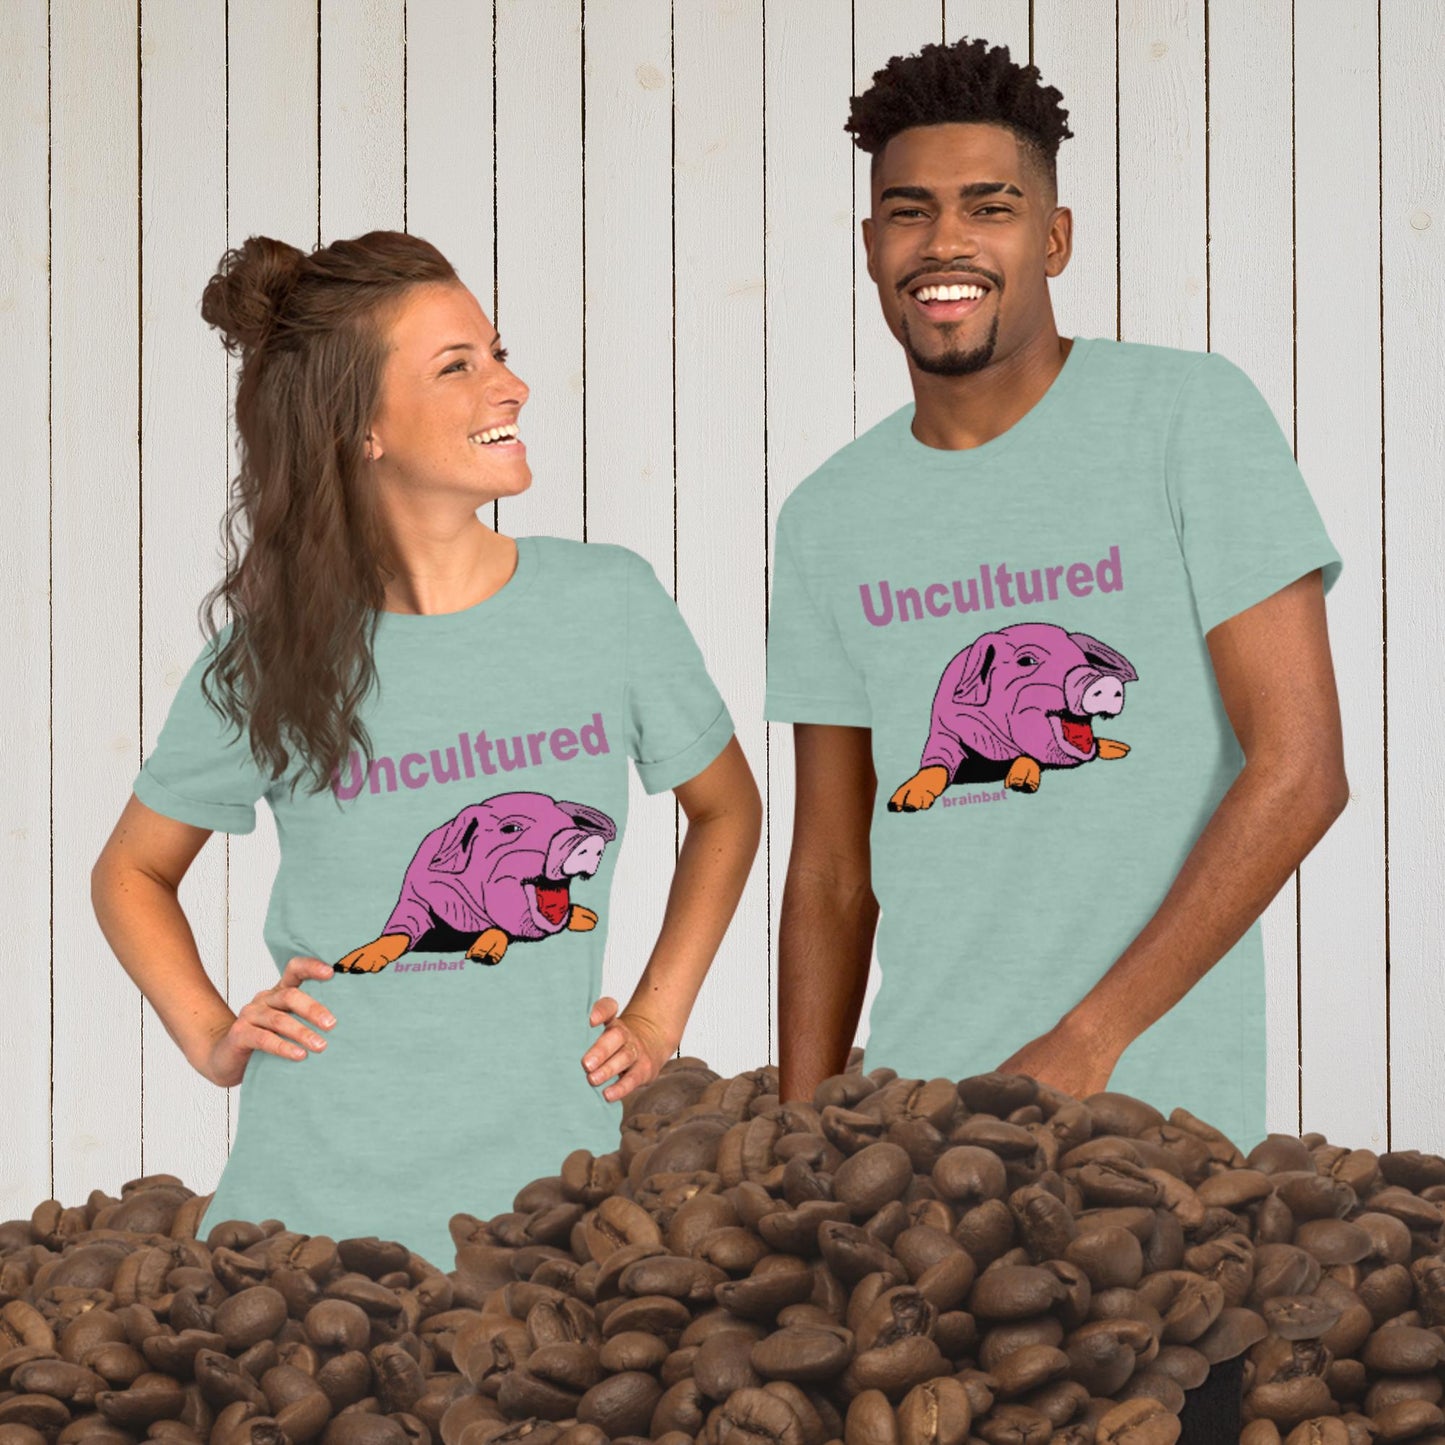 Uncultured Swine T-shirt by Brainbat